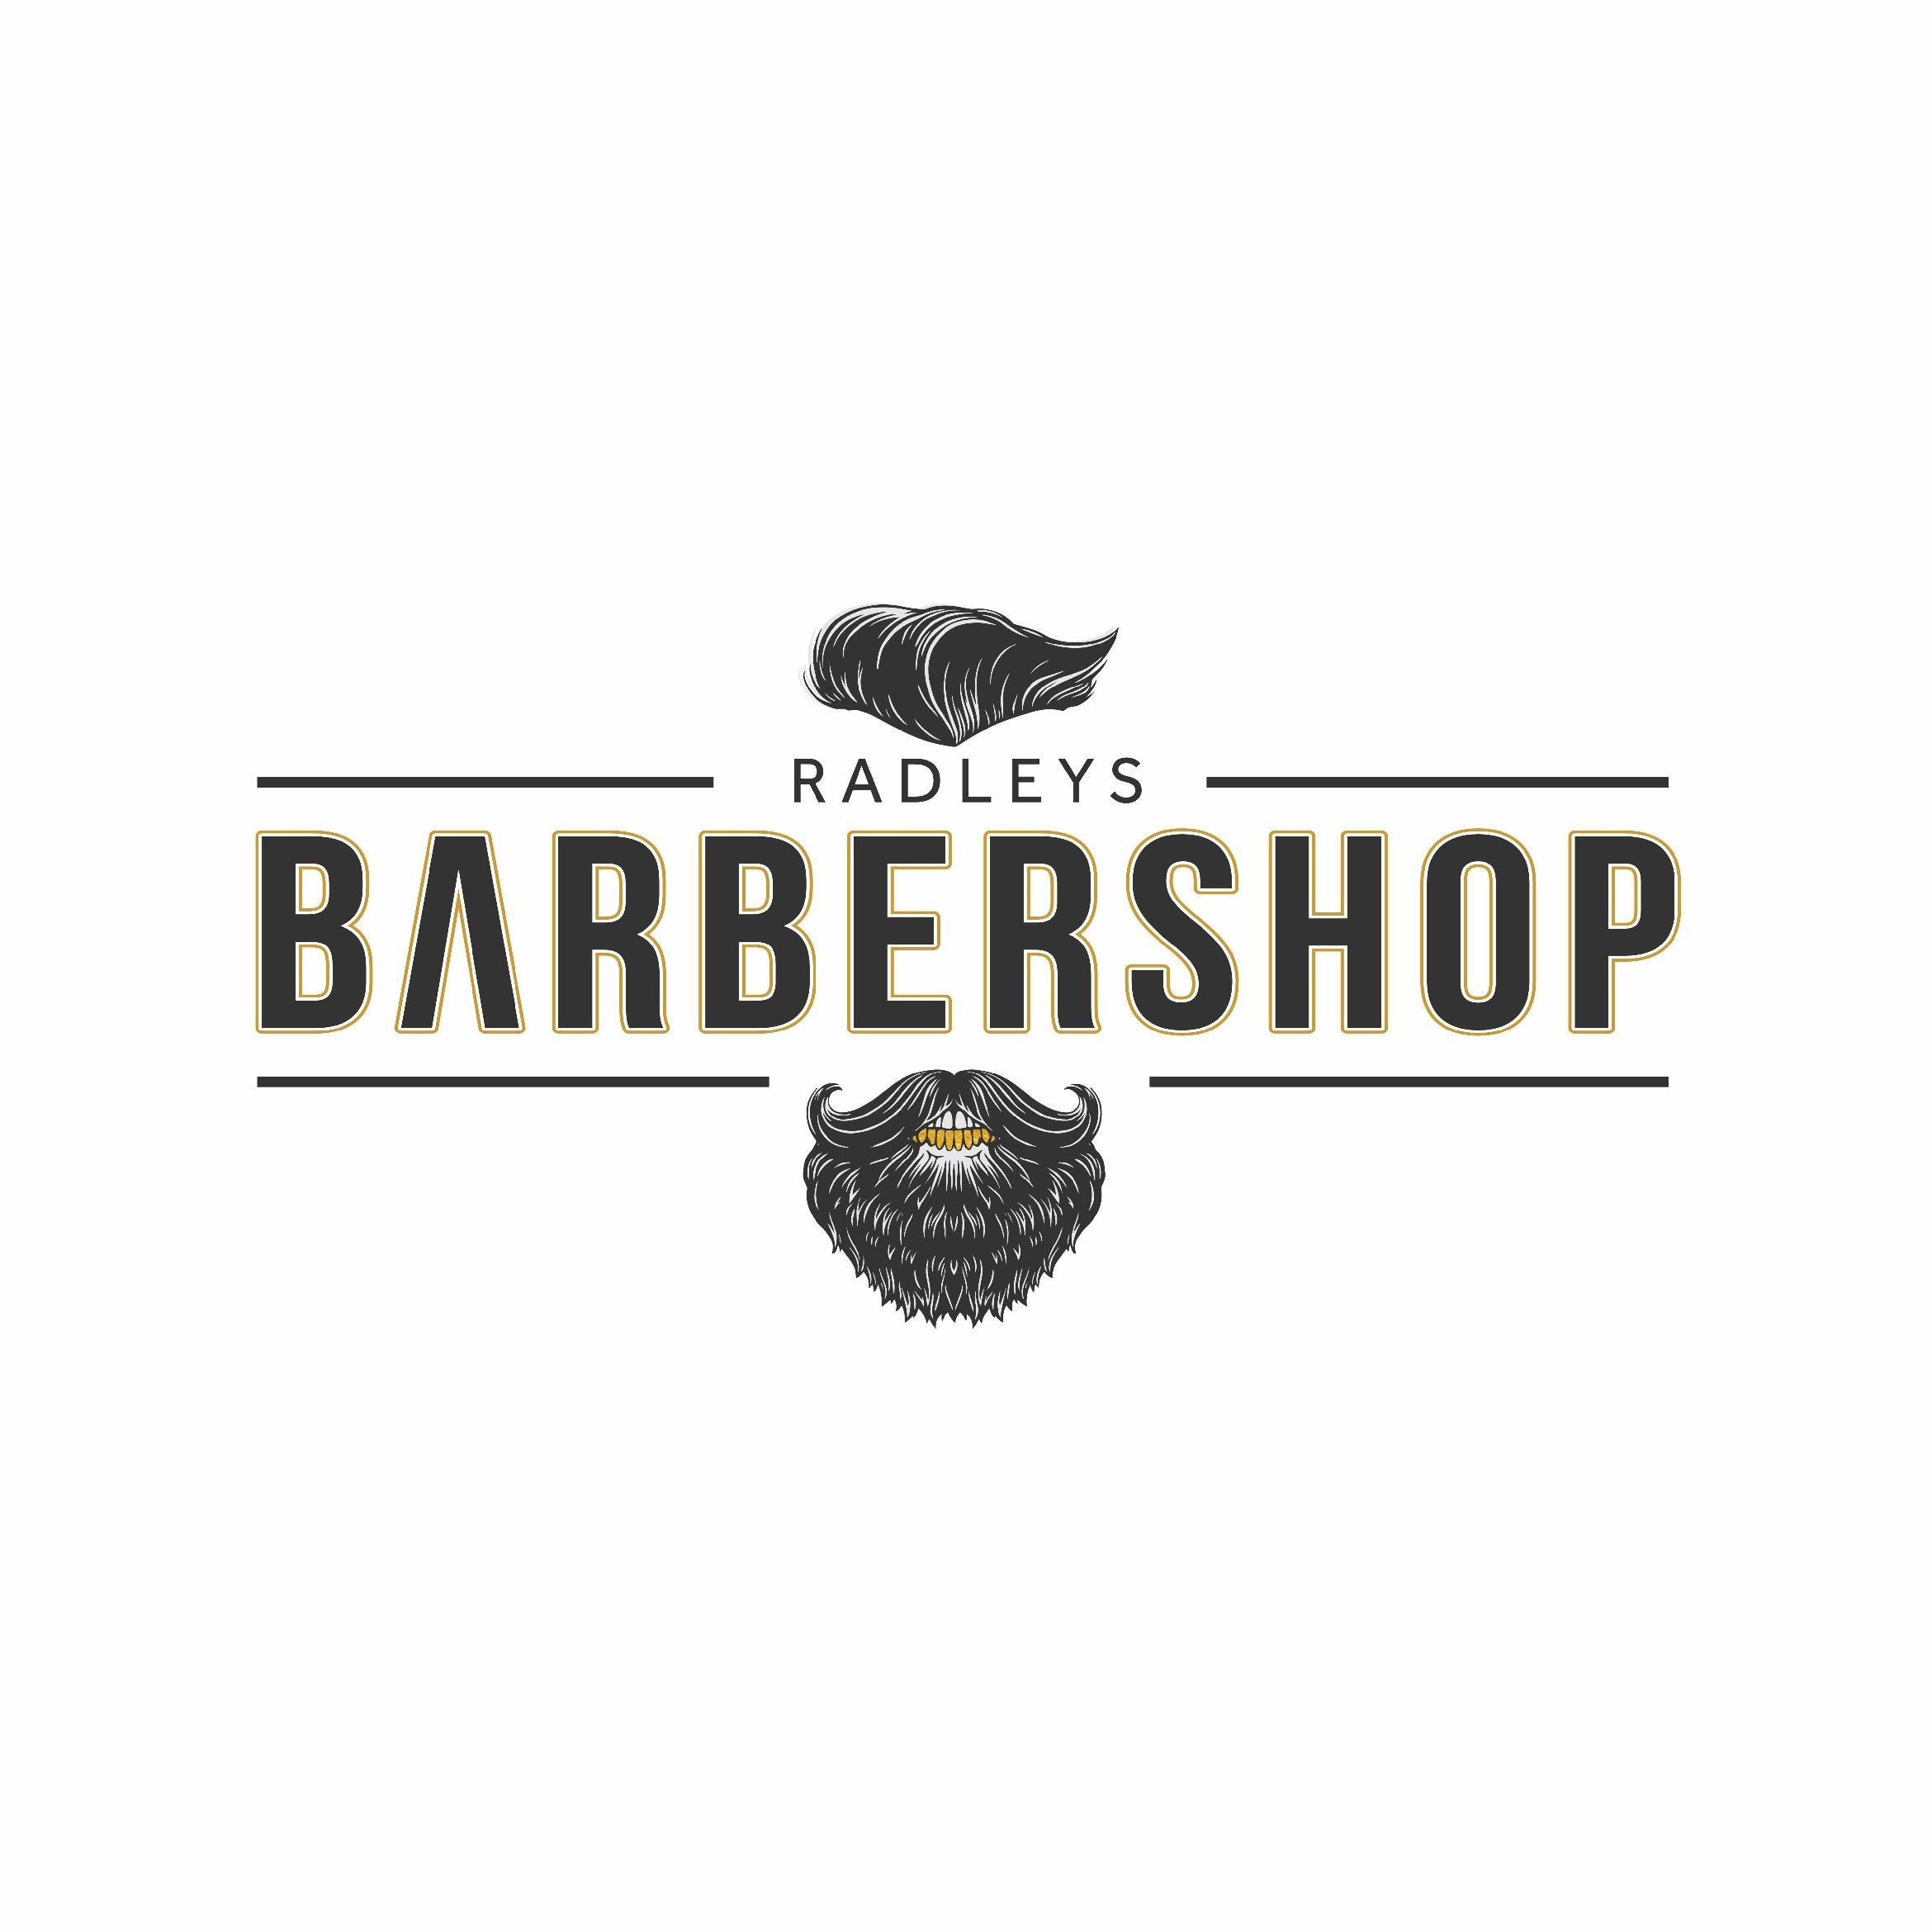 Radleys Barbershop, 447 Brays Road, B26 2RR, Birmingham